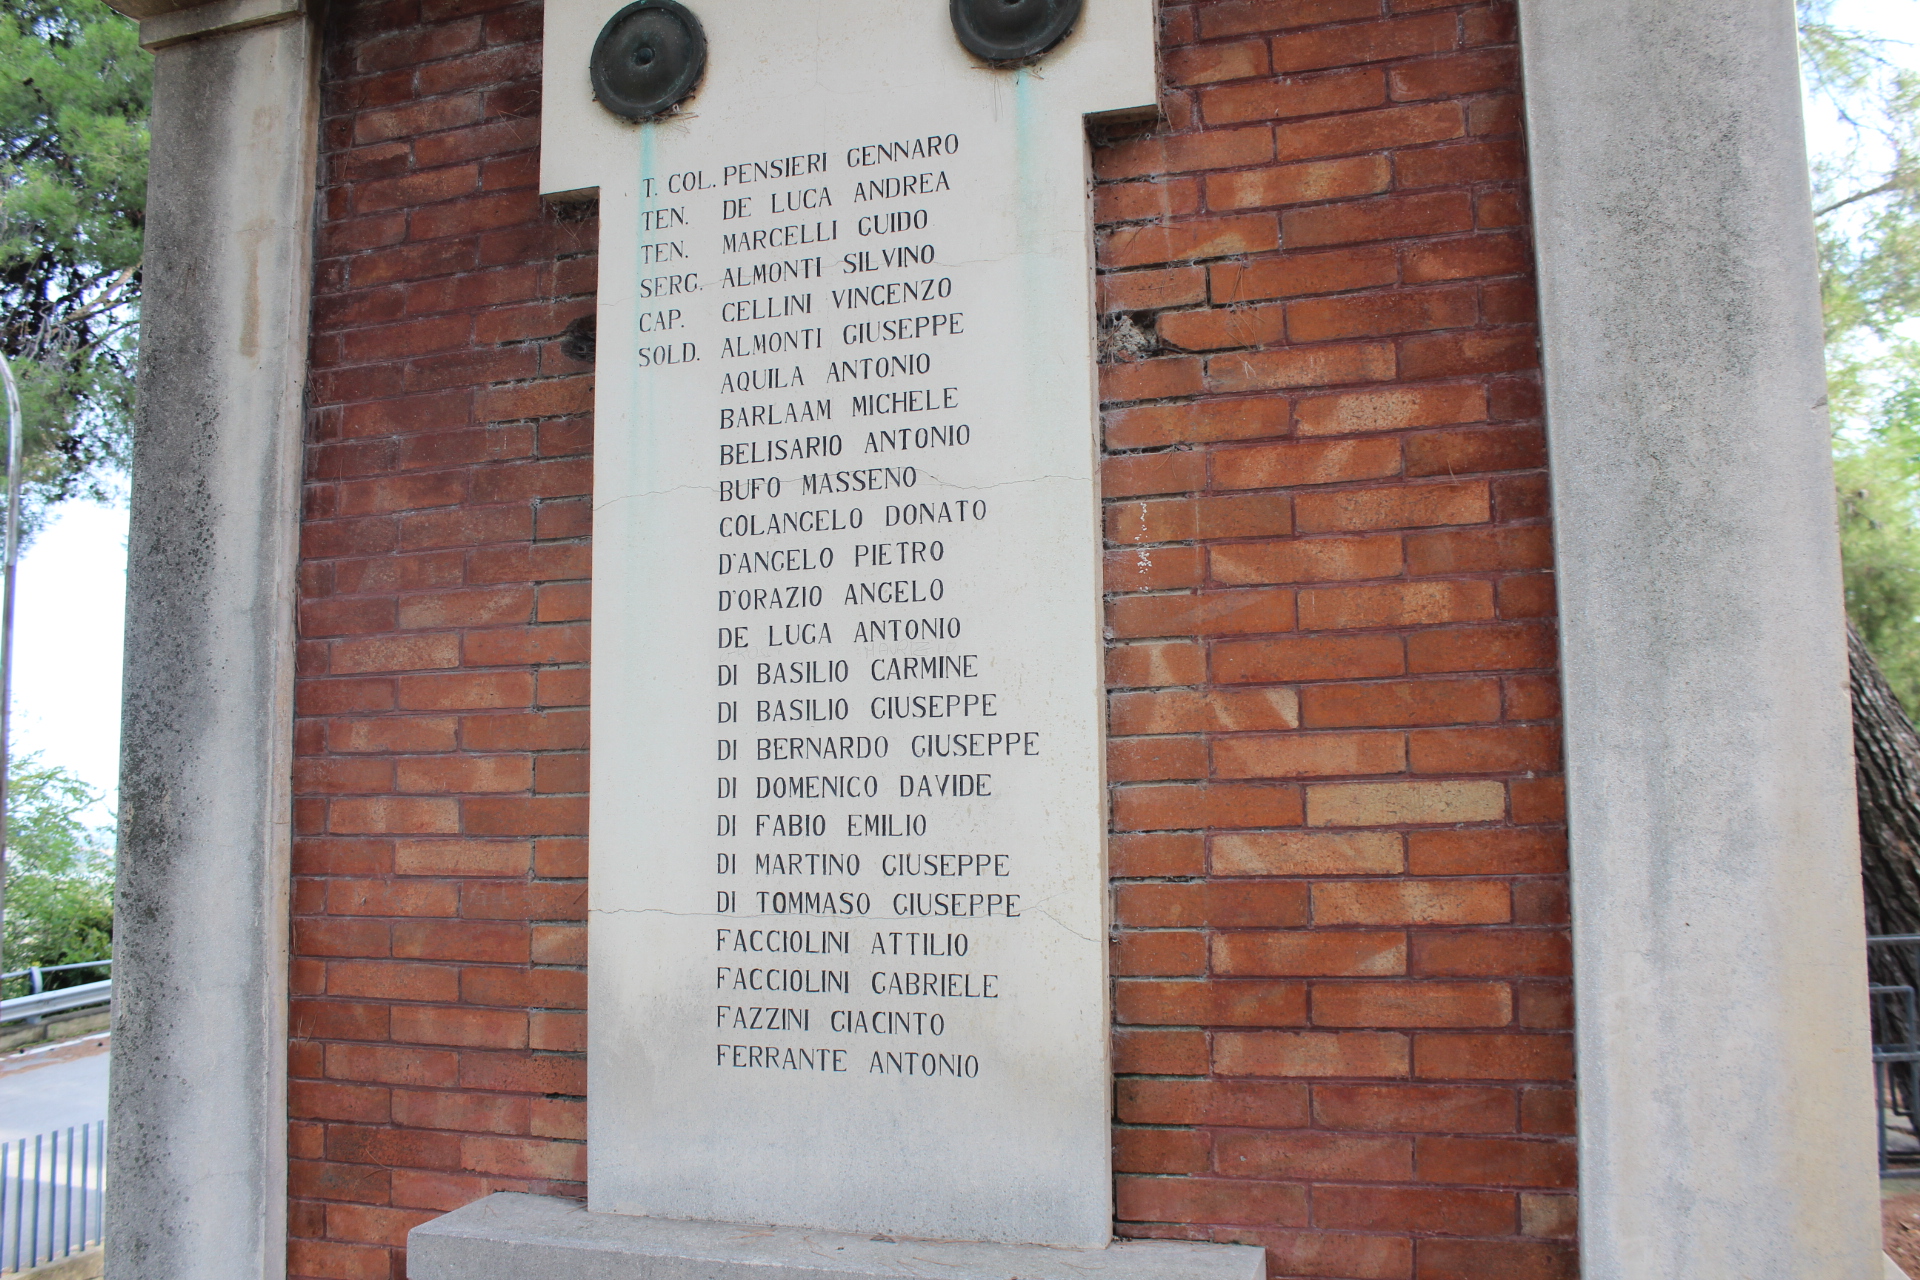 lapide commemorativa ai caduti - ambito abruzzese (seconda metà XX)